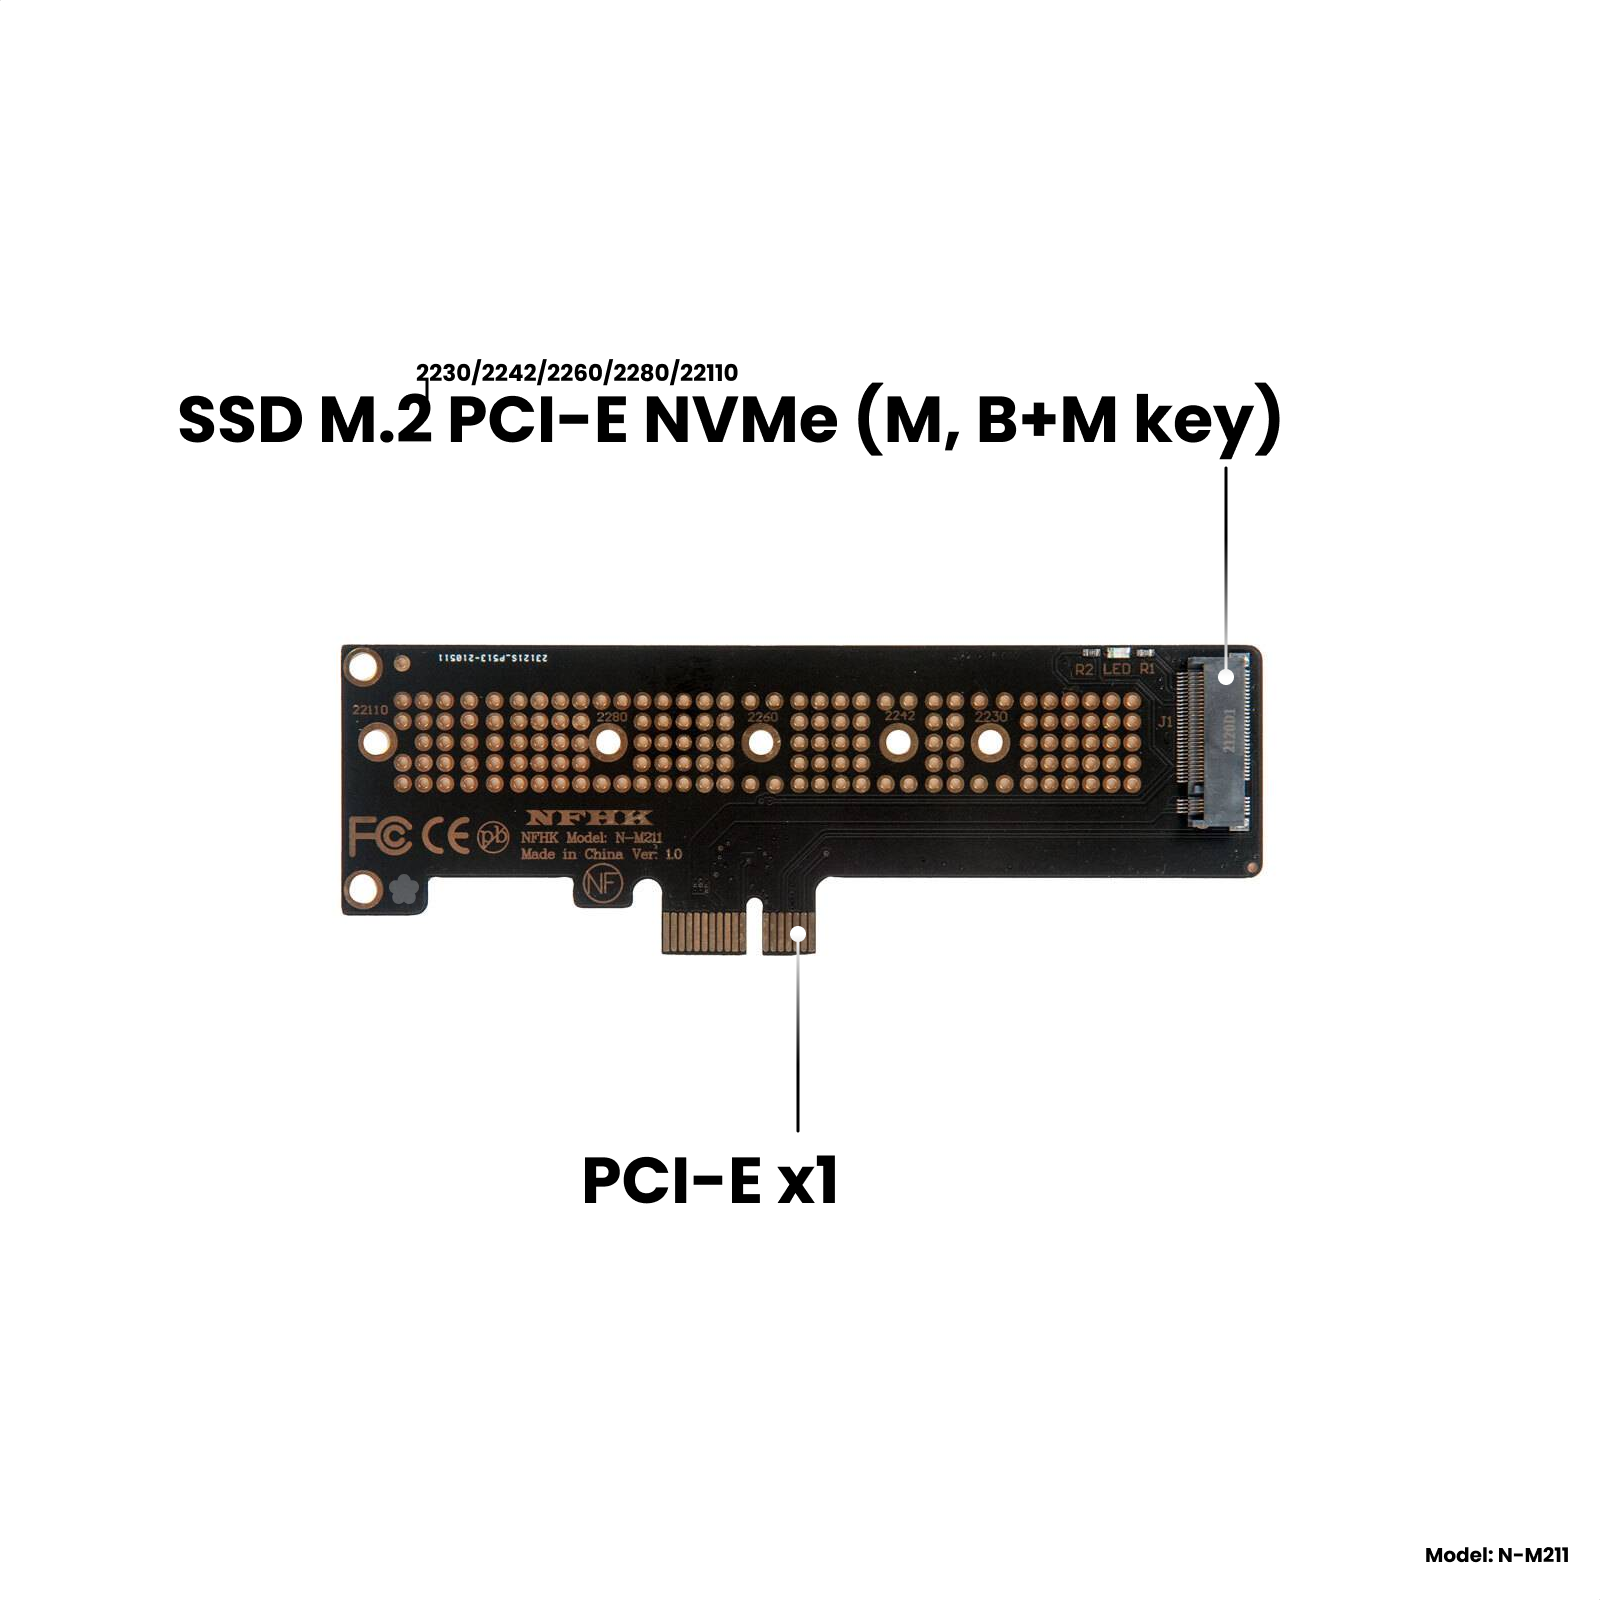 Адаптер-переходник (плата расширения) для установки SSD M.2 2230-22110 PCI-E NVMe (M B+M key) в слот PCI-E 3.0/4.0 x1/x4/x8/x16 NHFK N-M211